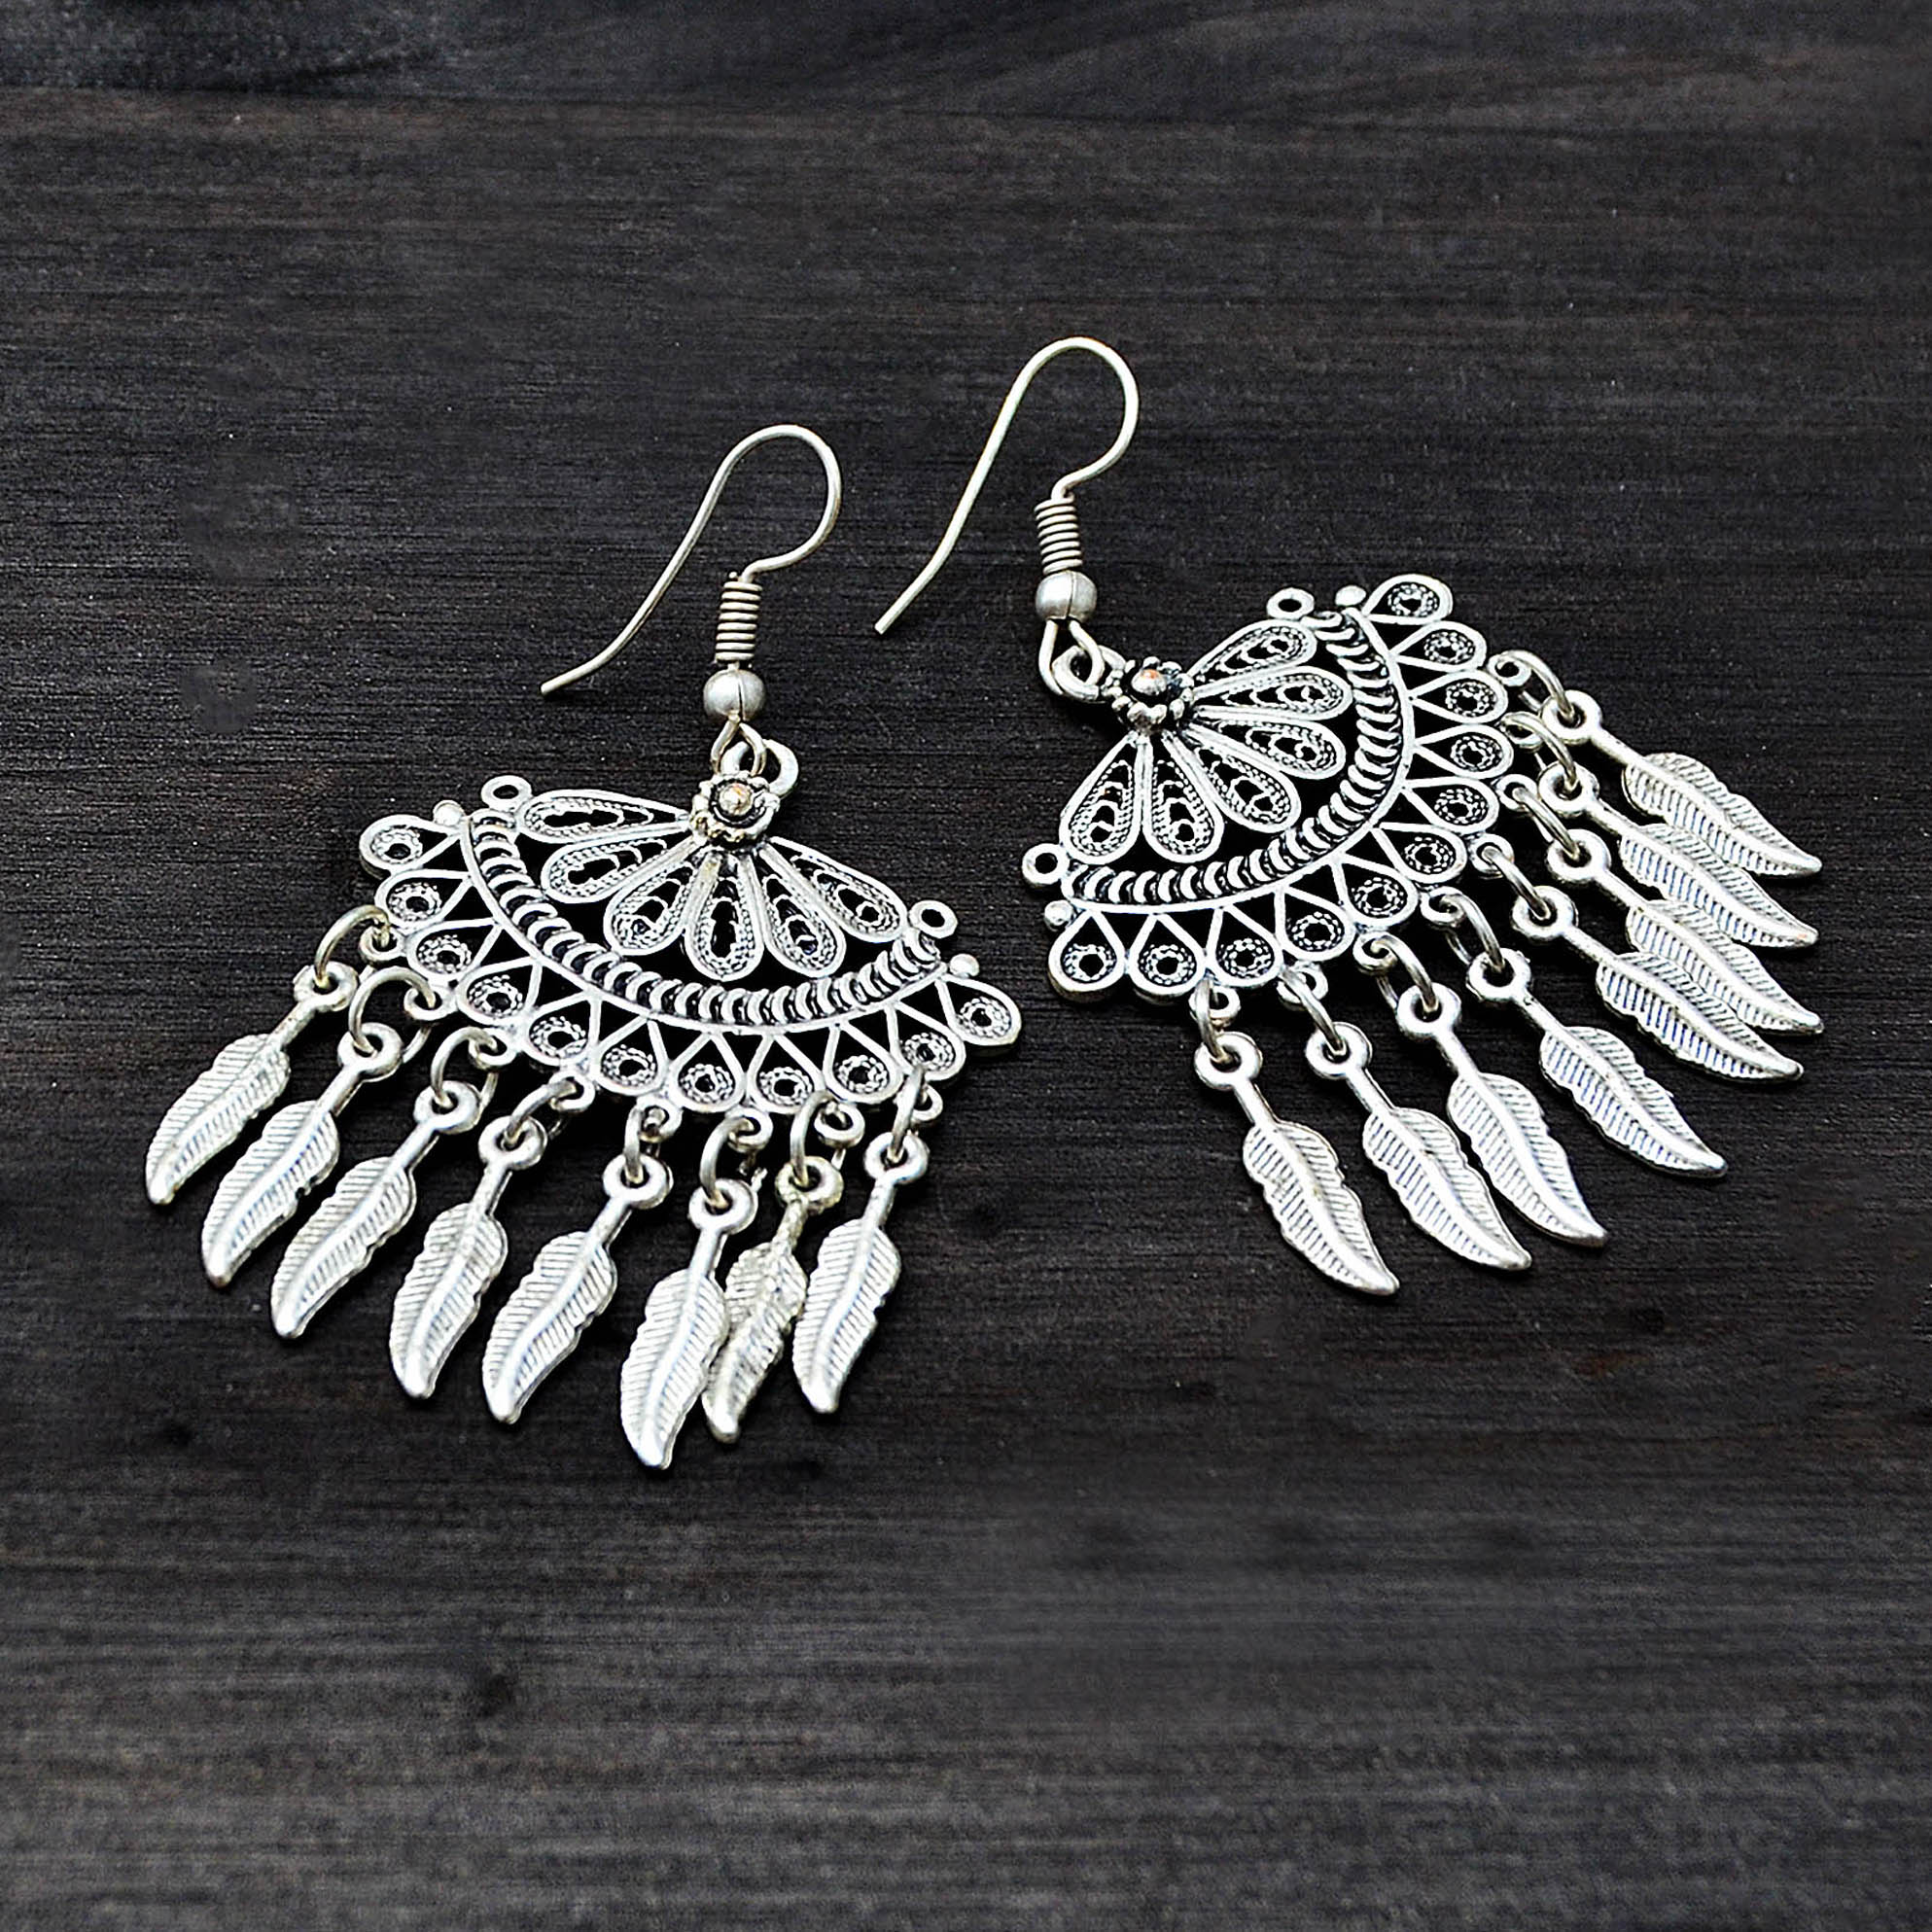 Turkish chandelier earrings